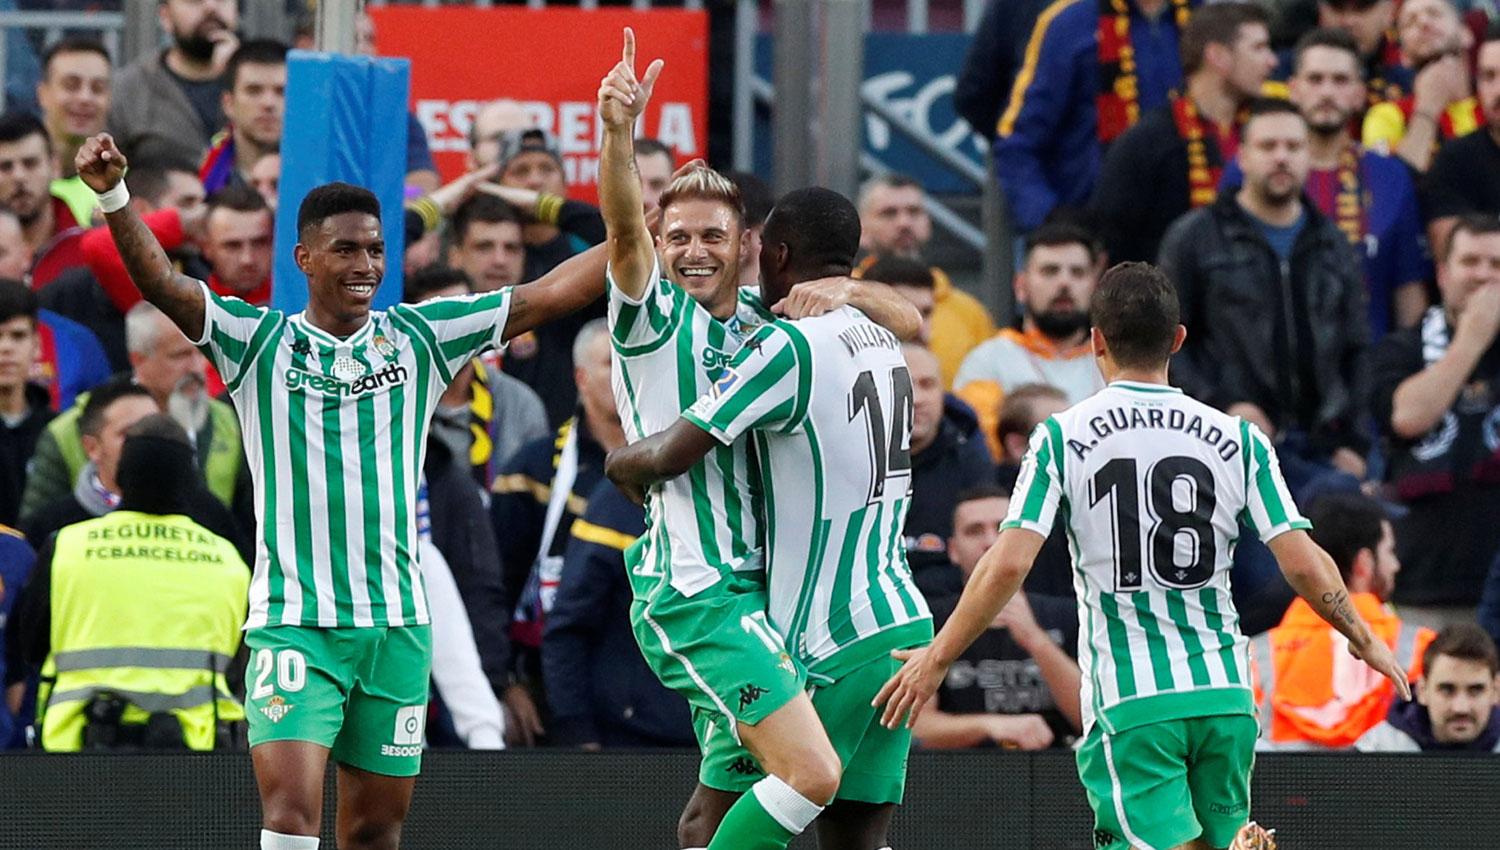 EL FESTEJO. Joaquín Sánchez celebra junto a sus compañeros el segundo gol de Betis.